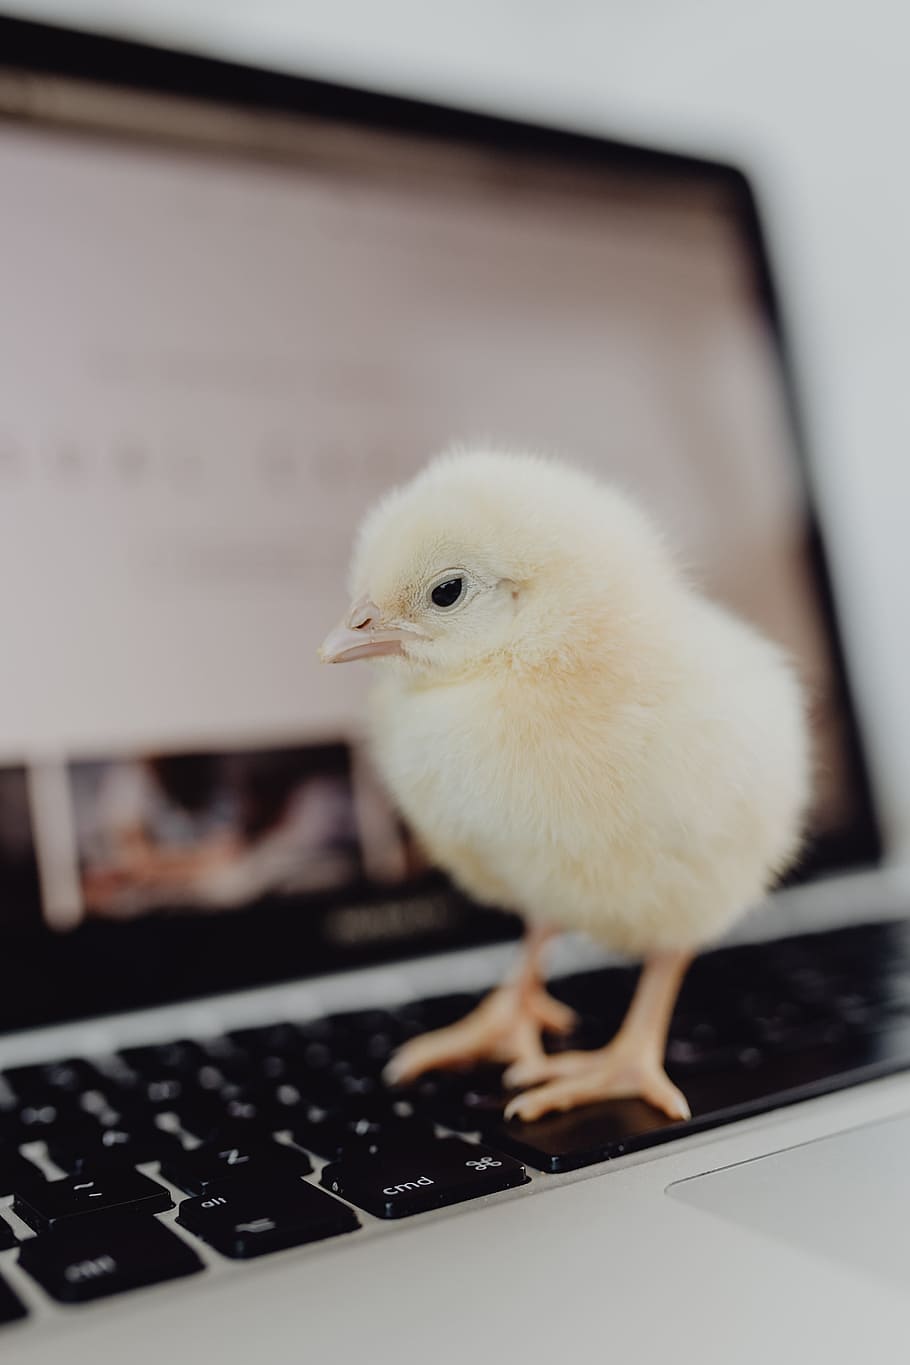 baru lahir, sedikit, ayam, laptop, komputer, keyboard, kuning, macbook, burung, bayi